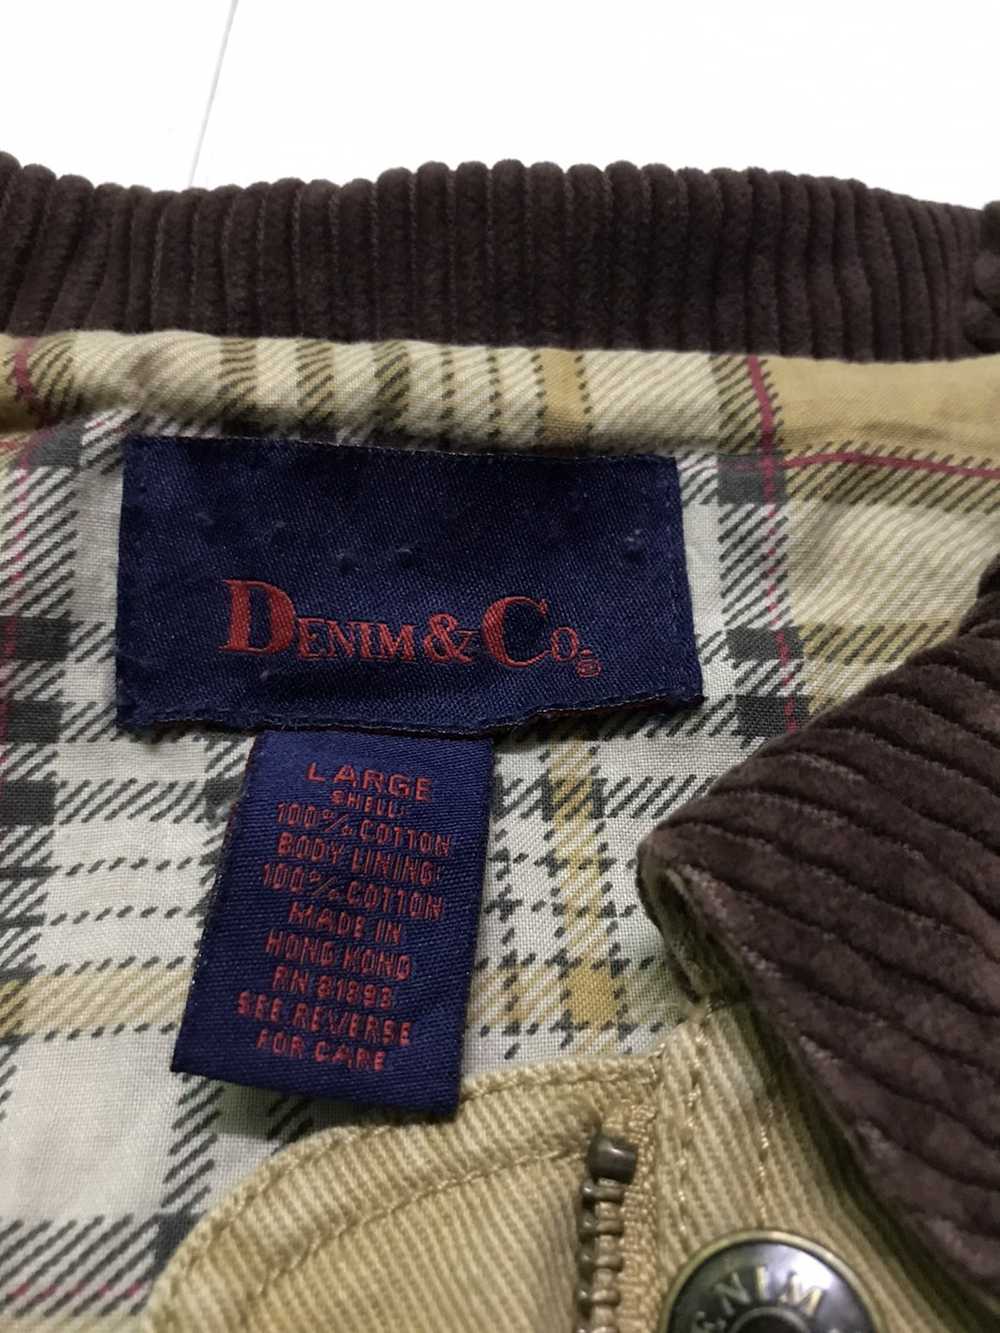 Denim & Co. Denim & co chore jacket - image 5